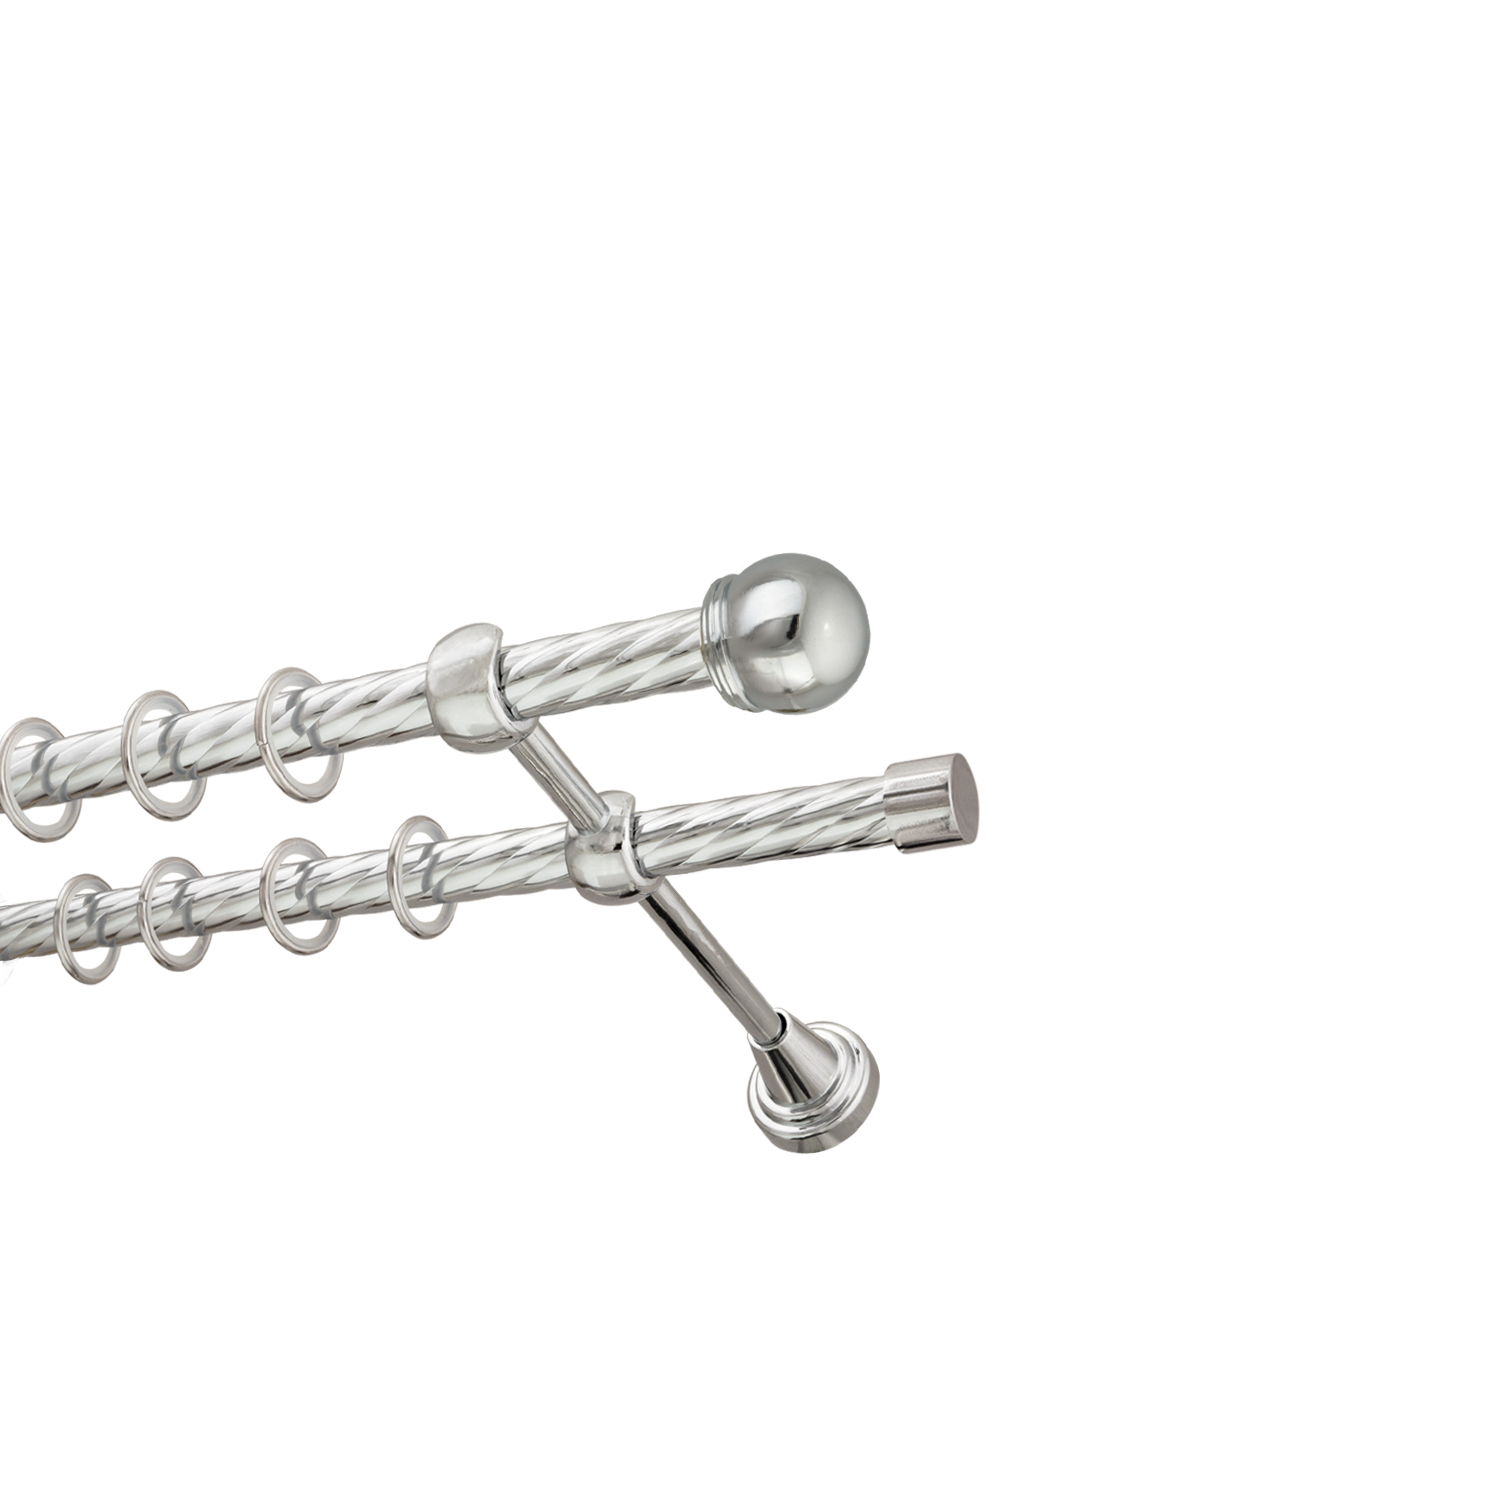 Металлический карниз для штор Вива, двухрядный 16/16 мм, серебро, витая штанга, длина 140 см